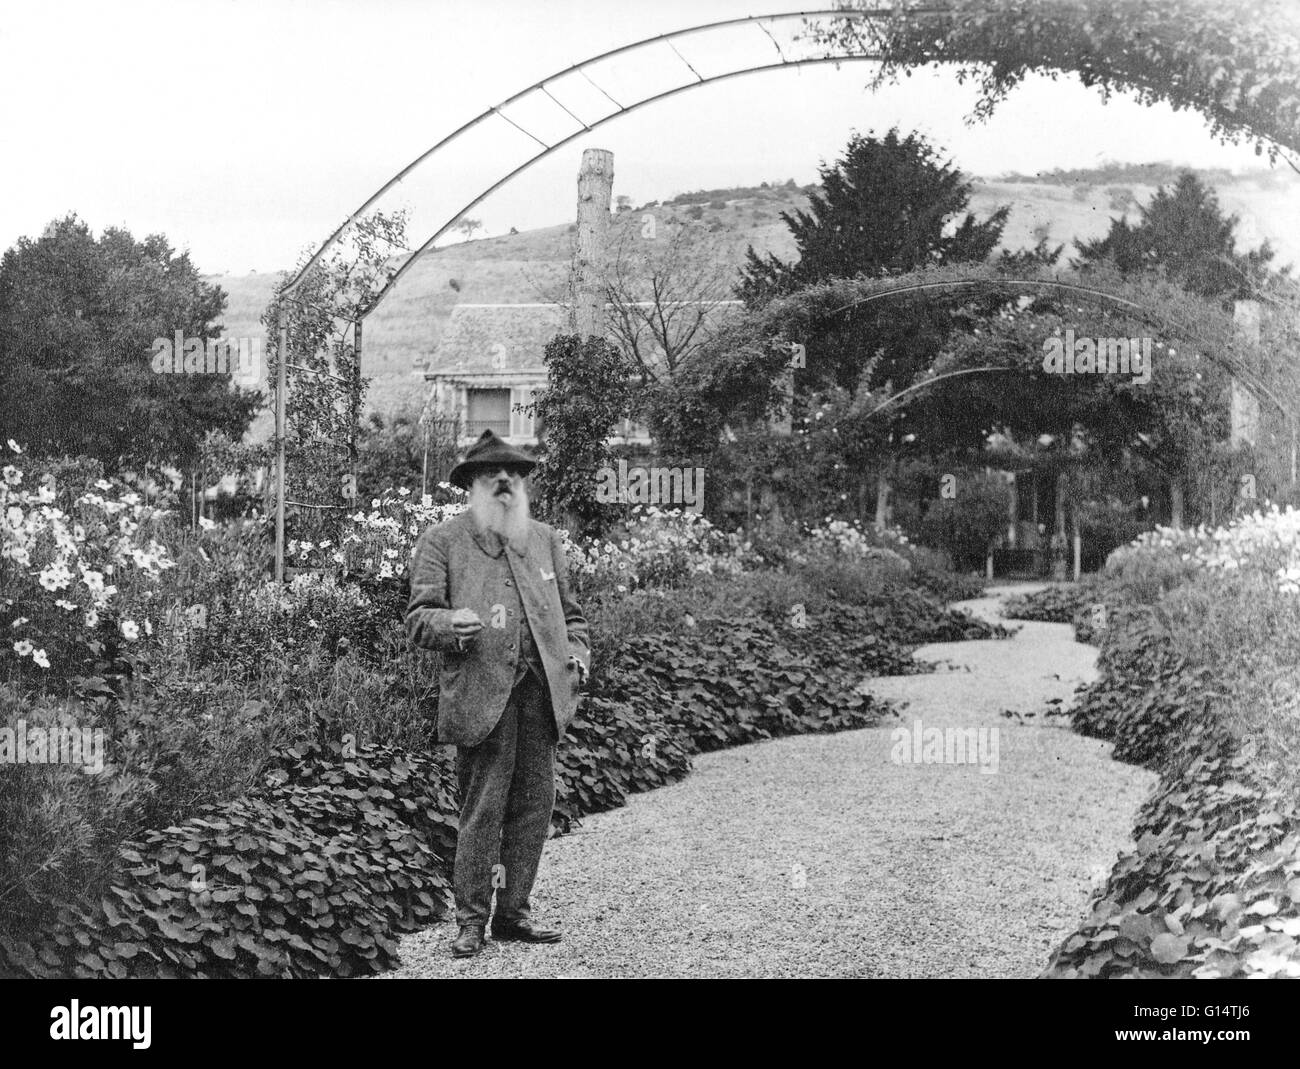 Claude Monet debout dans un jardin à Giverny, France. Le peintre a vécu pendant 43 ans et peint les jardins pour laquelle il est célèbre. Monet, photographié par Nadar en 1901. Claude Monet (1906-1957) a été l'un des fondateurs de la peinture impressionniste français, Banque D'Images